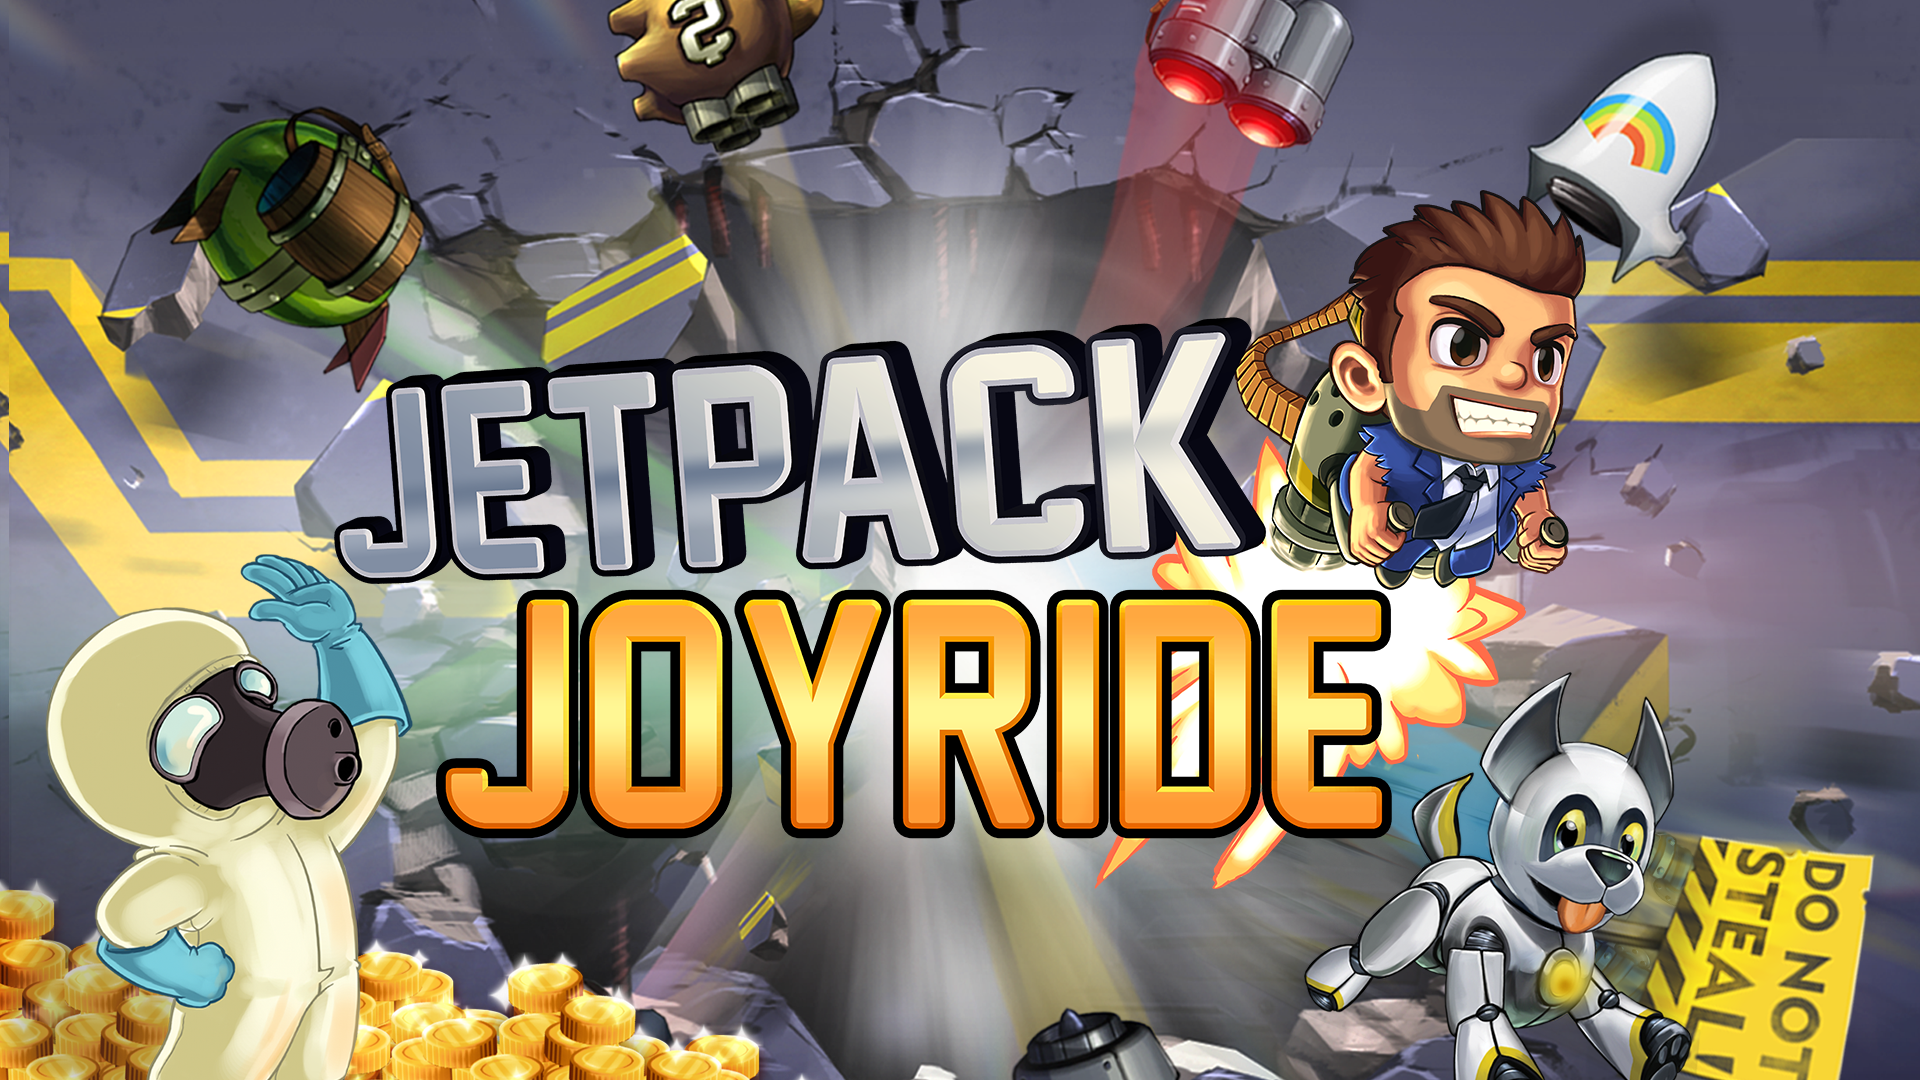 Is Jetpack Joyride Free